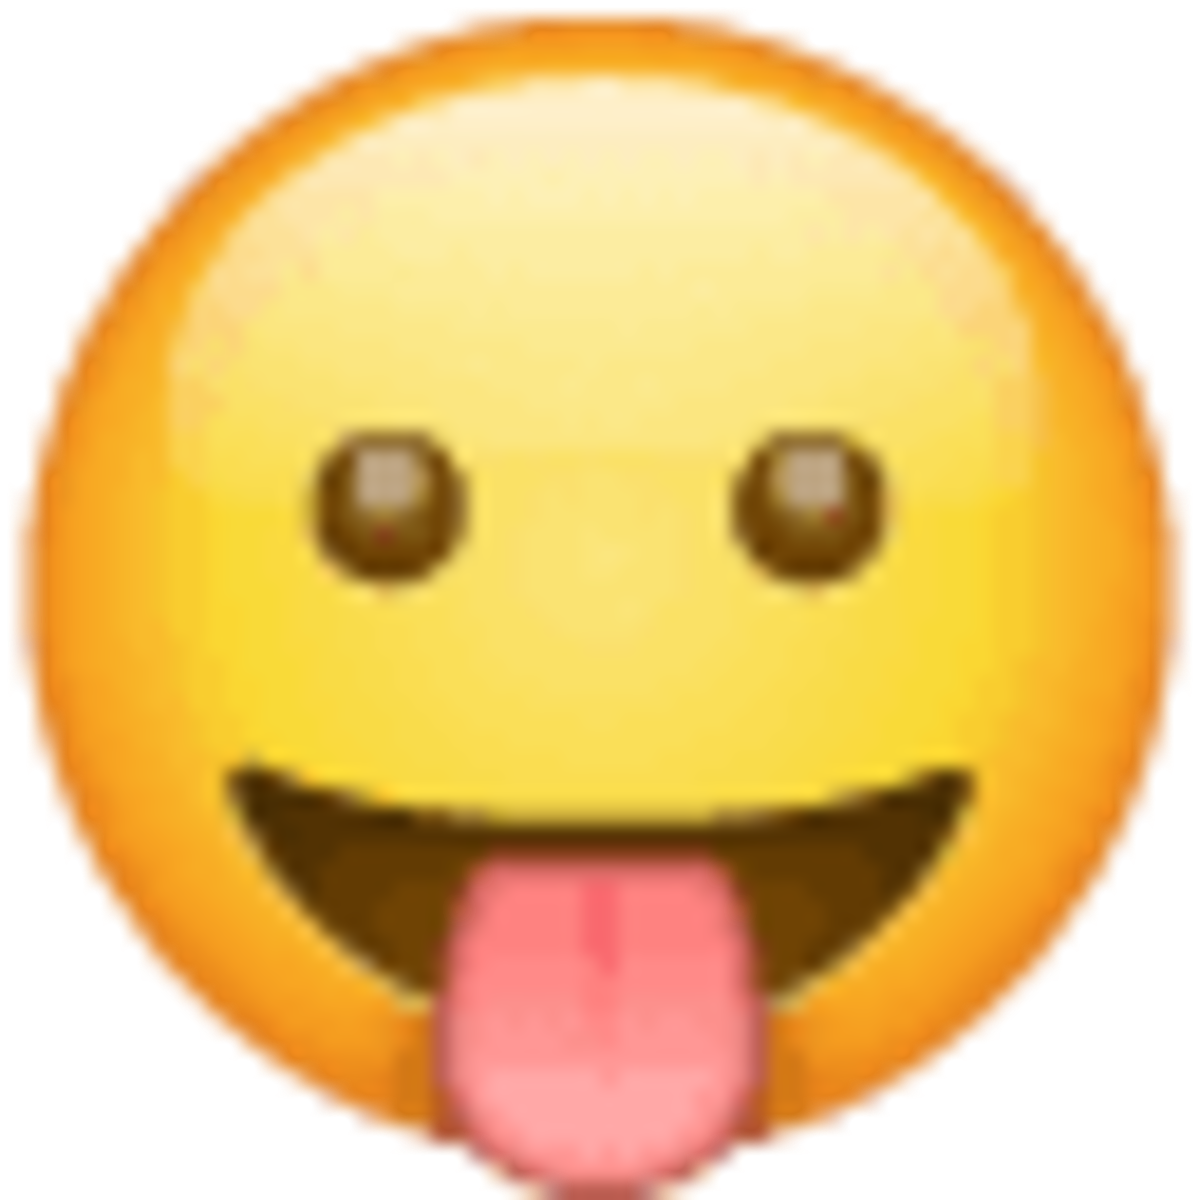 Emoji 1f61b, cara sacando la lengua